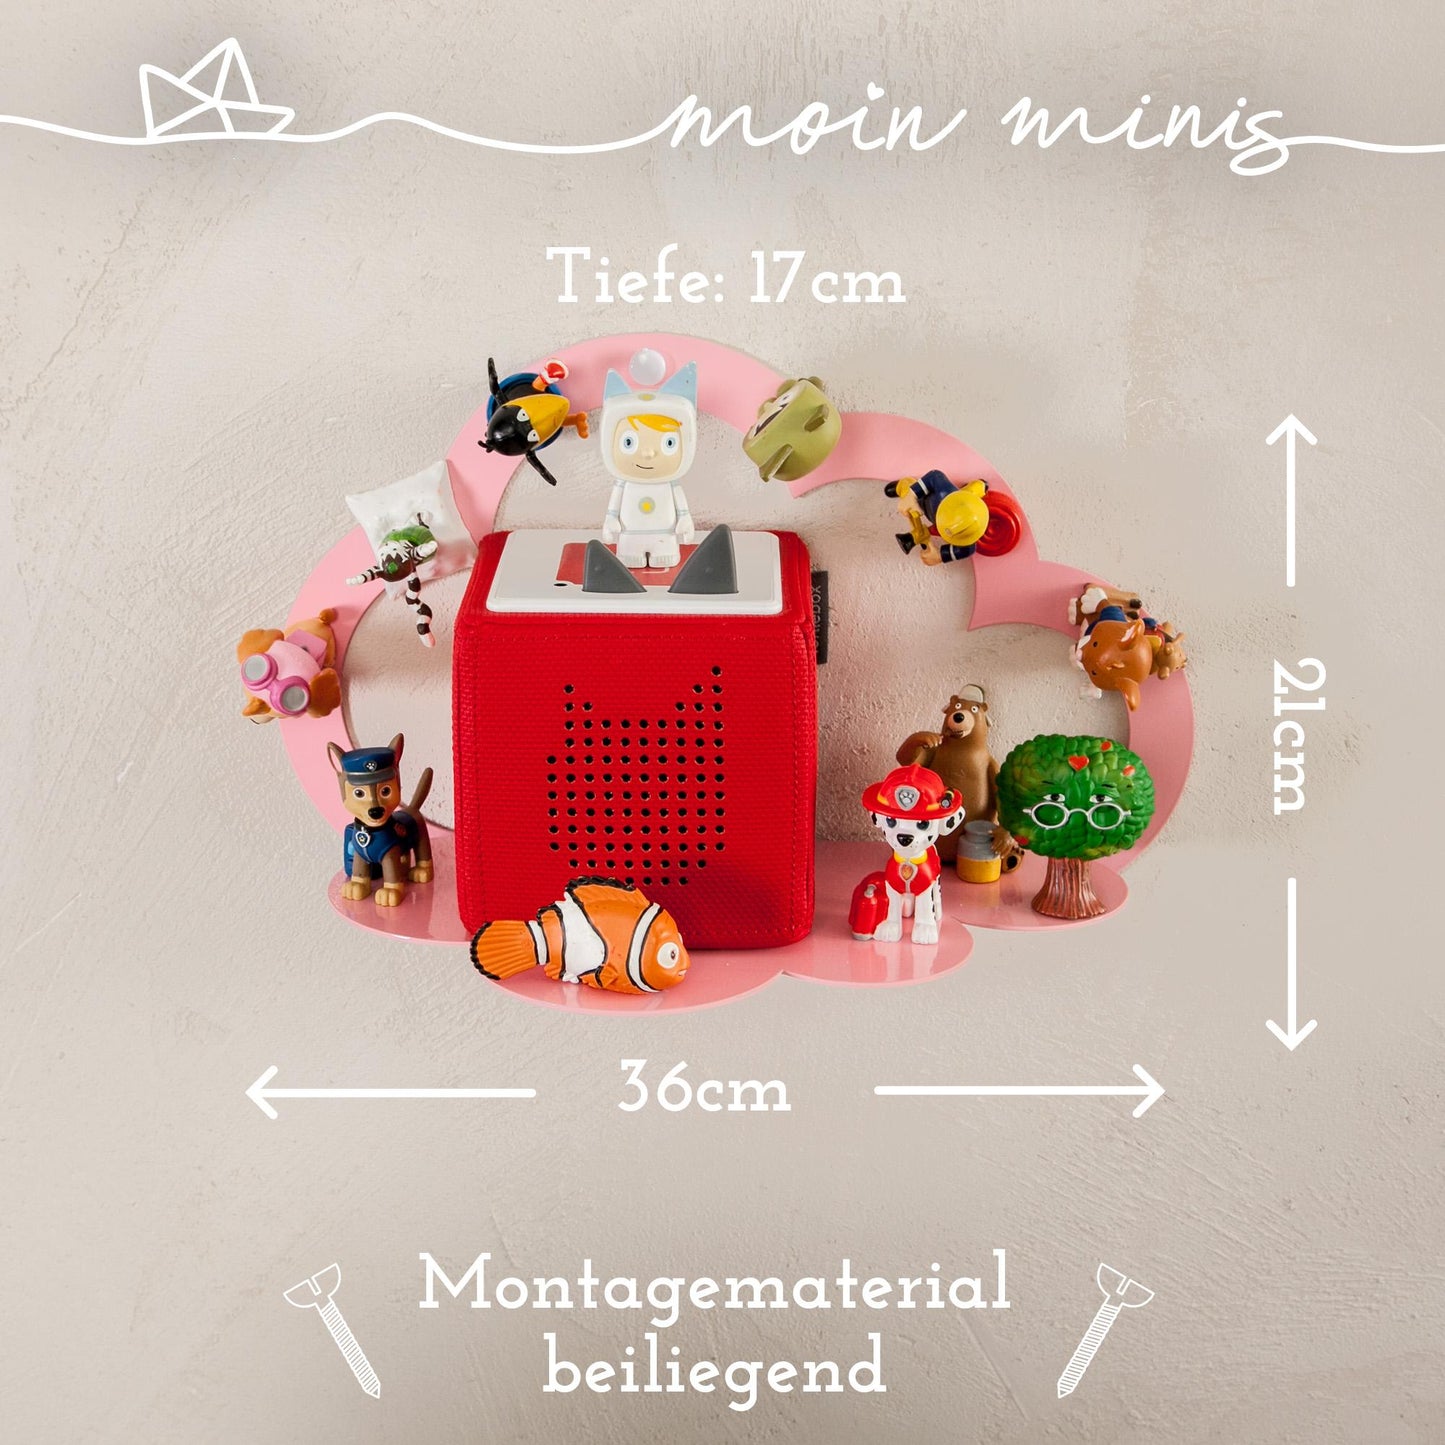 moin minis Wolke Rosa / Pink magnetisches Regal kompatibel mit 20 Tonie Figuren und Tonie Box Wolkenregal für Kinder Hörfiguren Magnetregal